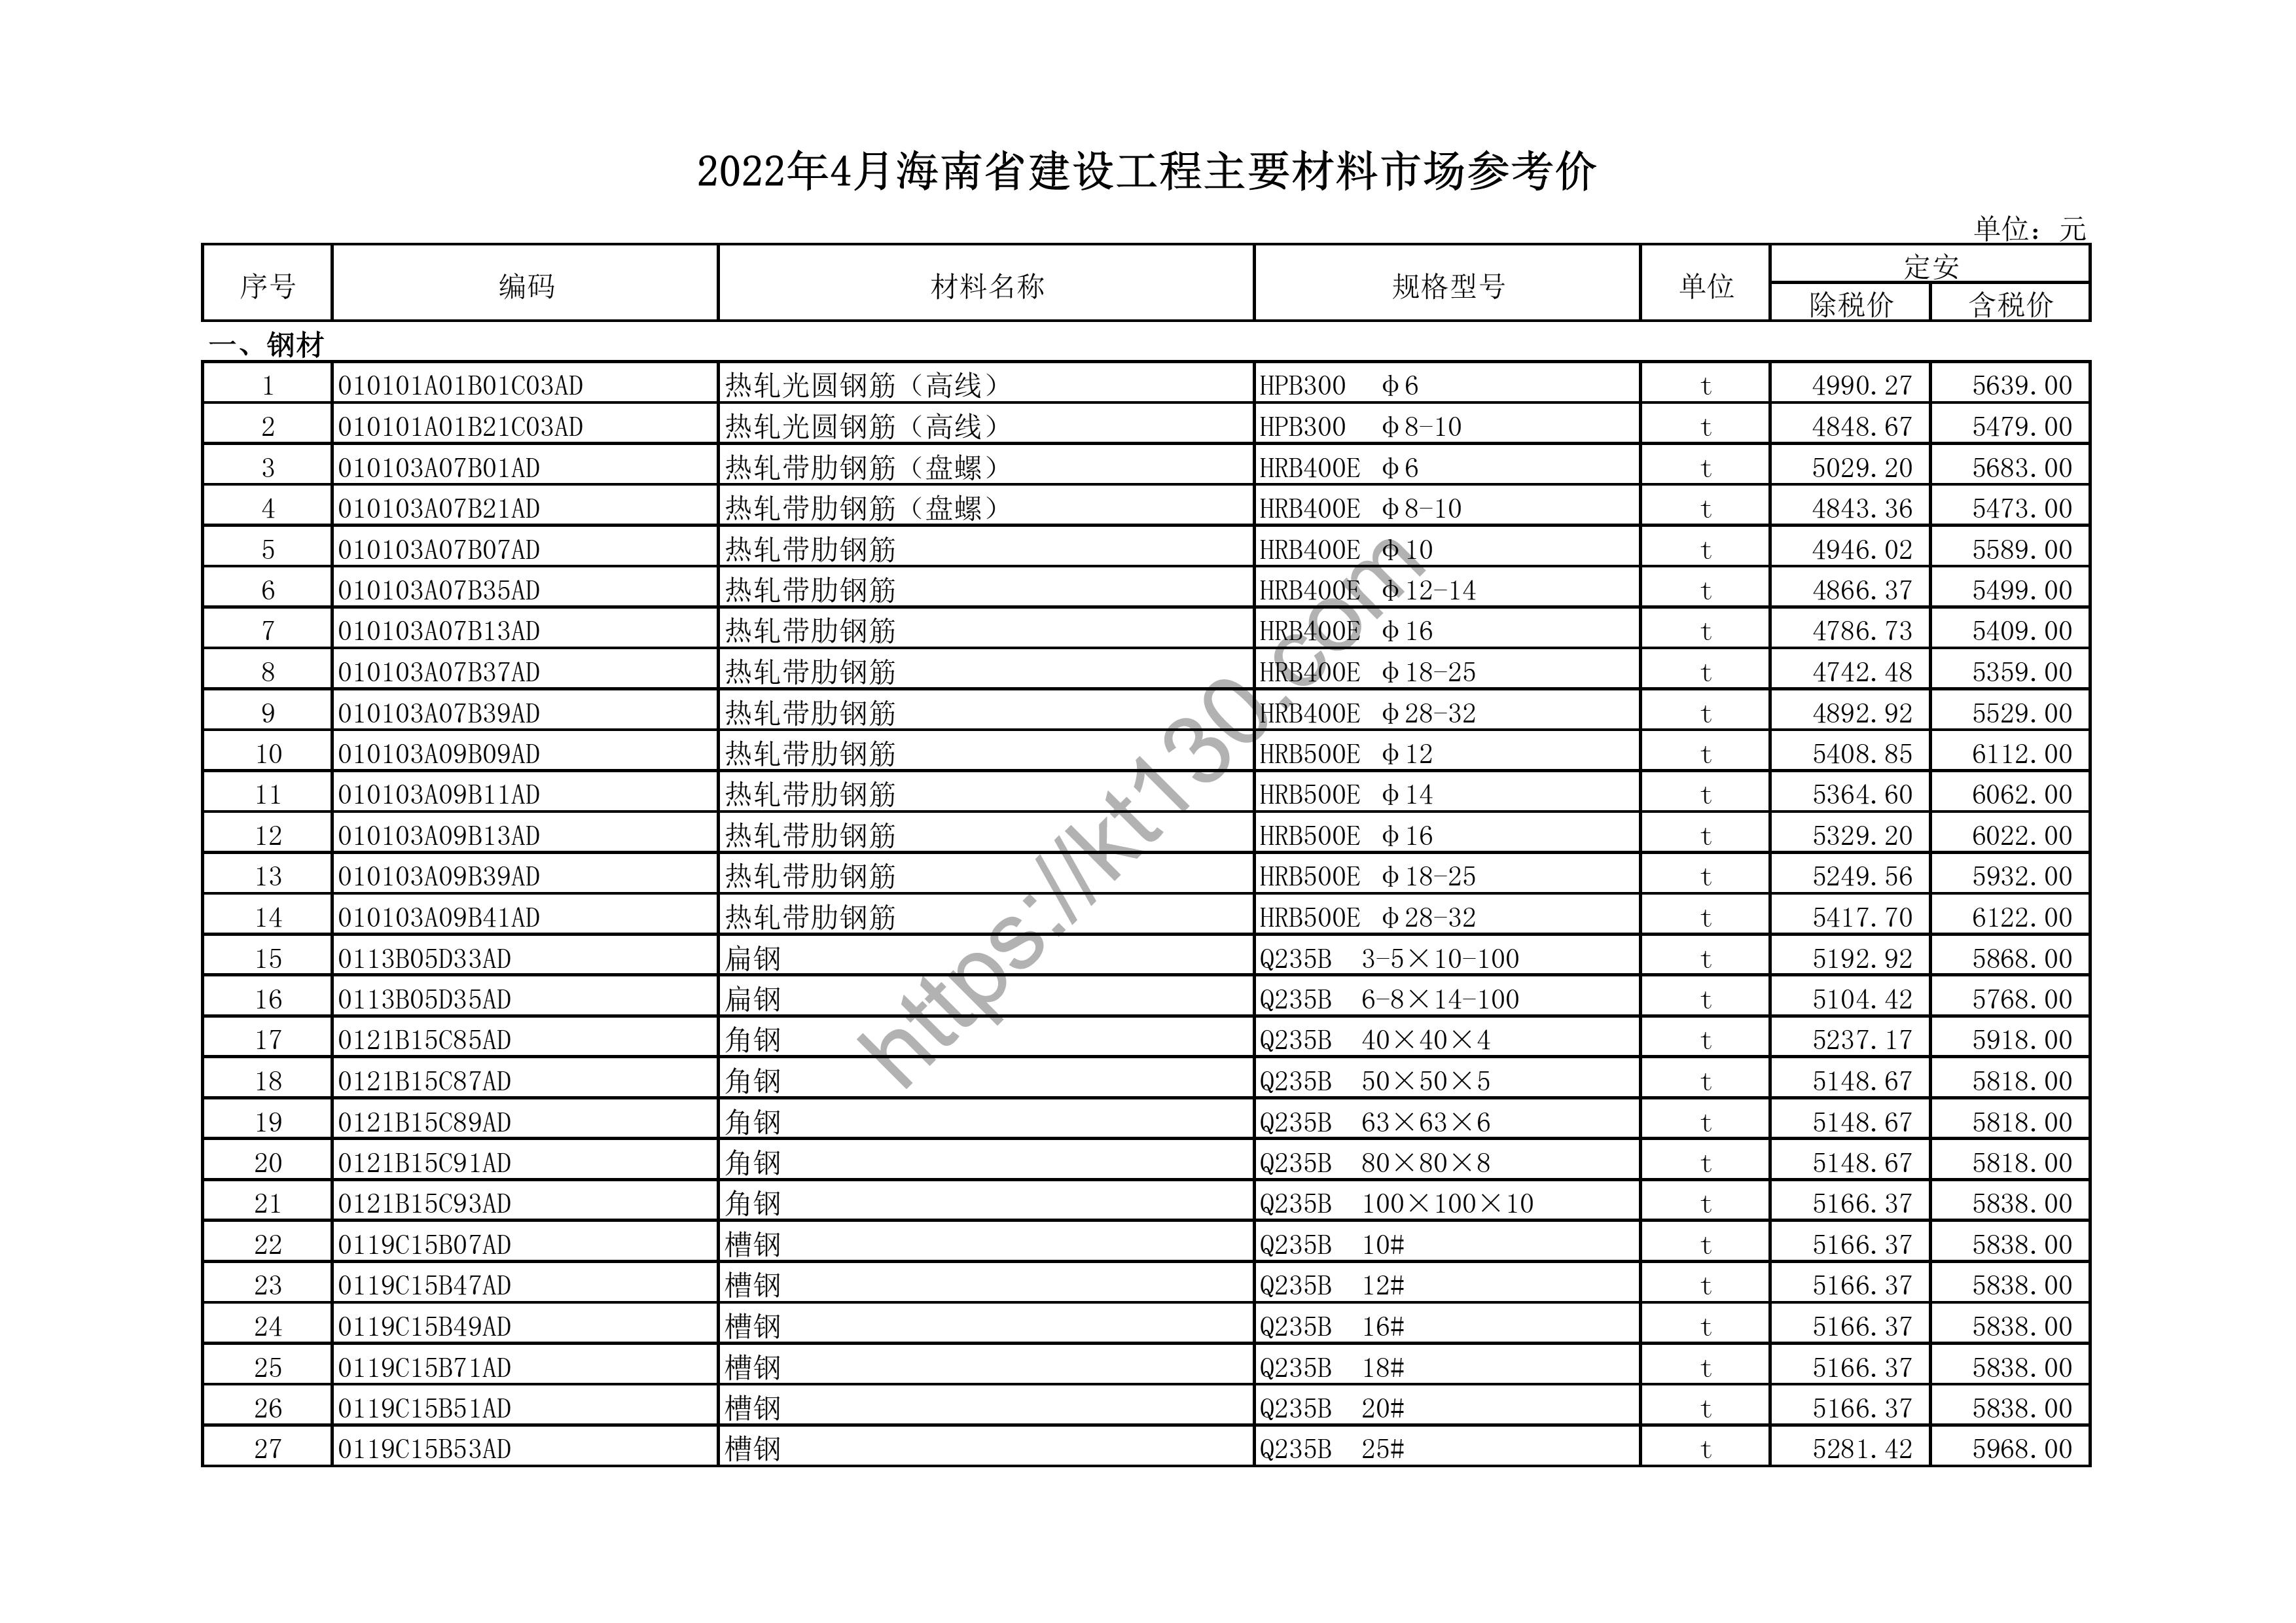 海南省2022年4月建筑材料价_钢材_44139